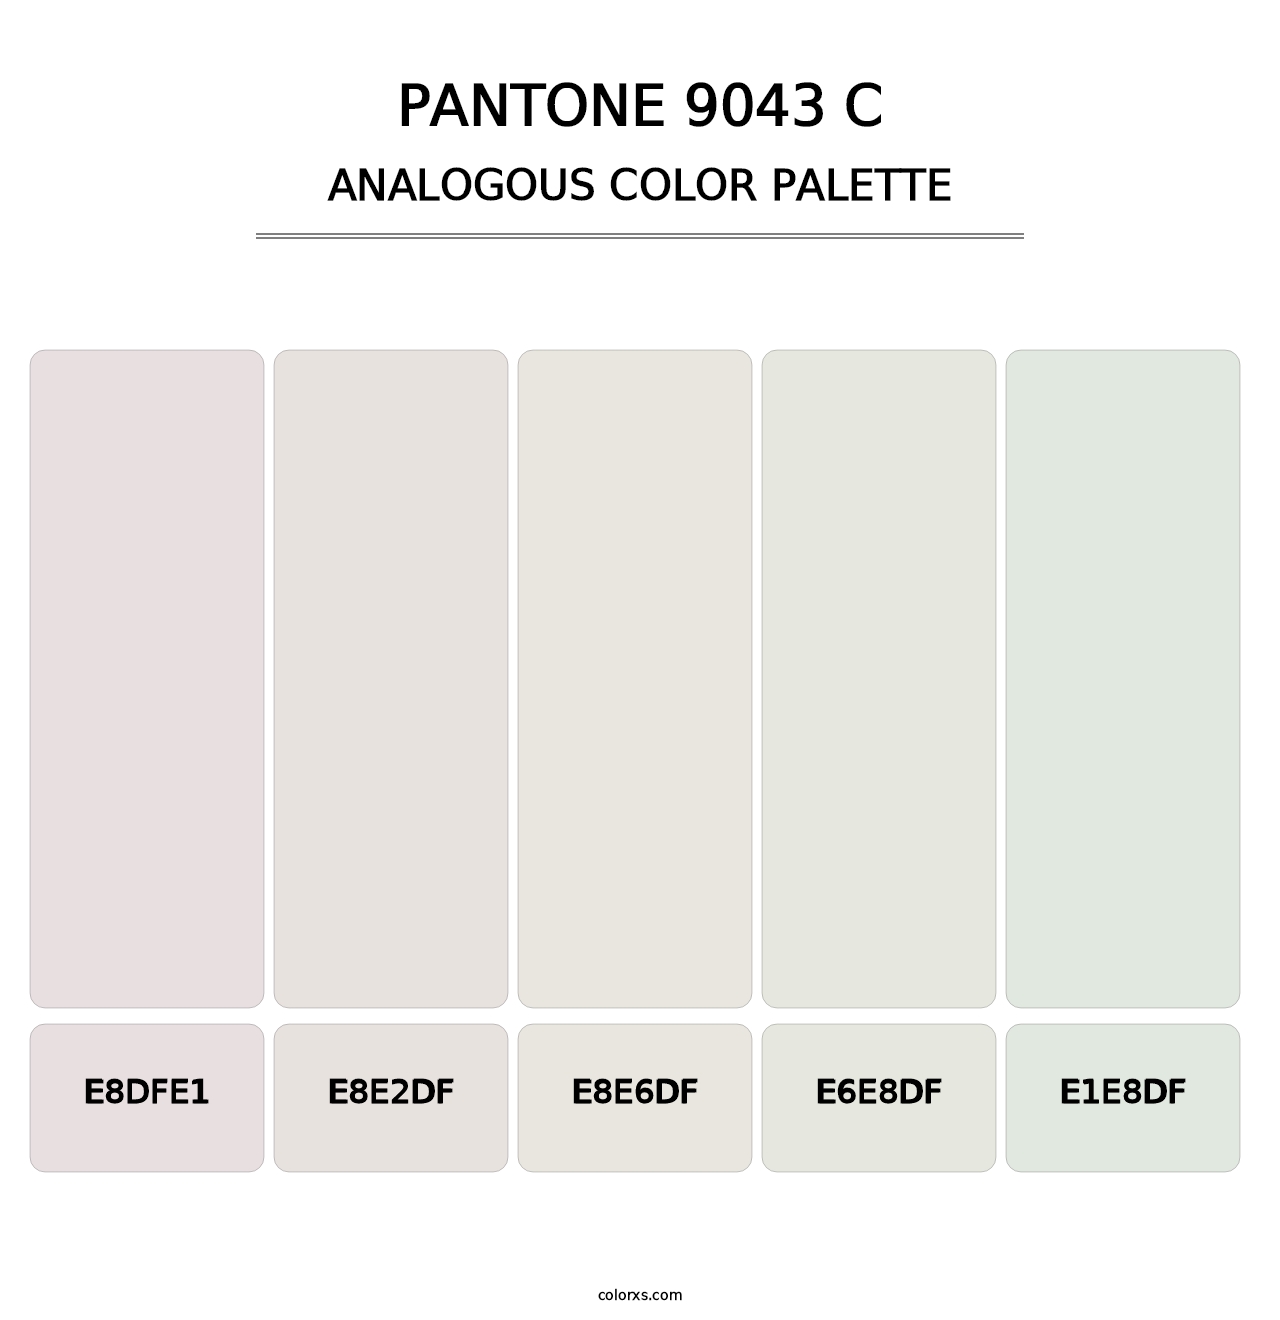 PANTONE 9043 C - Analogous Color Palette